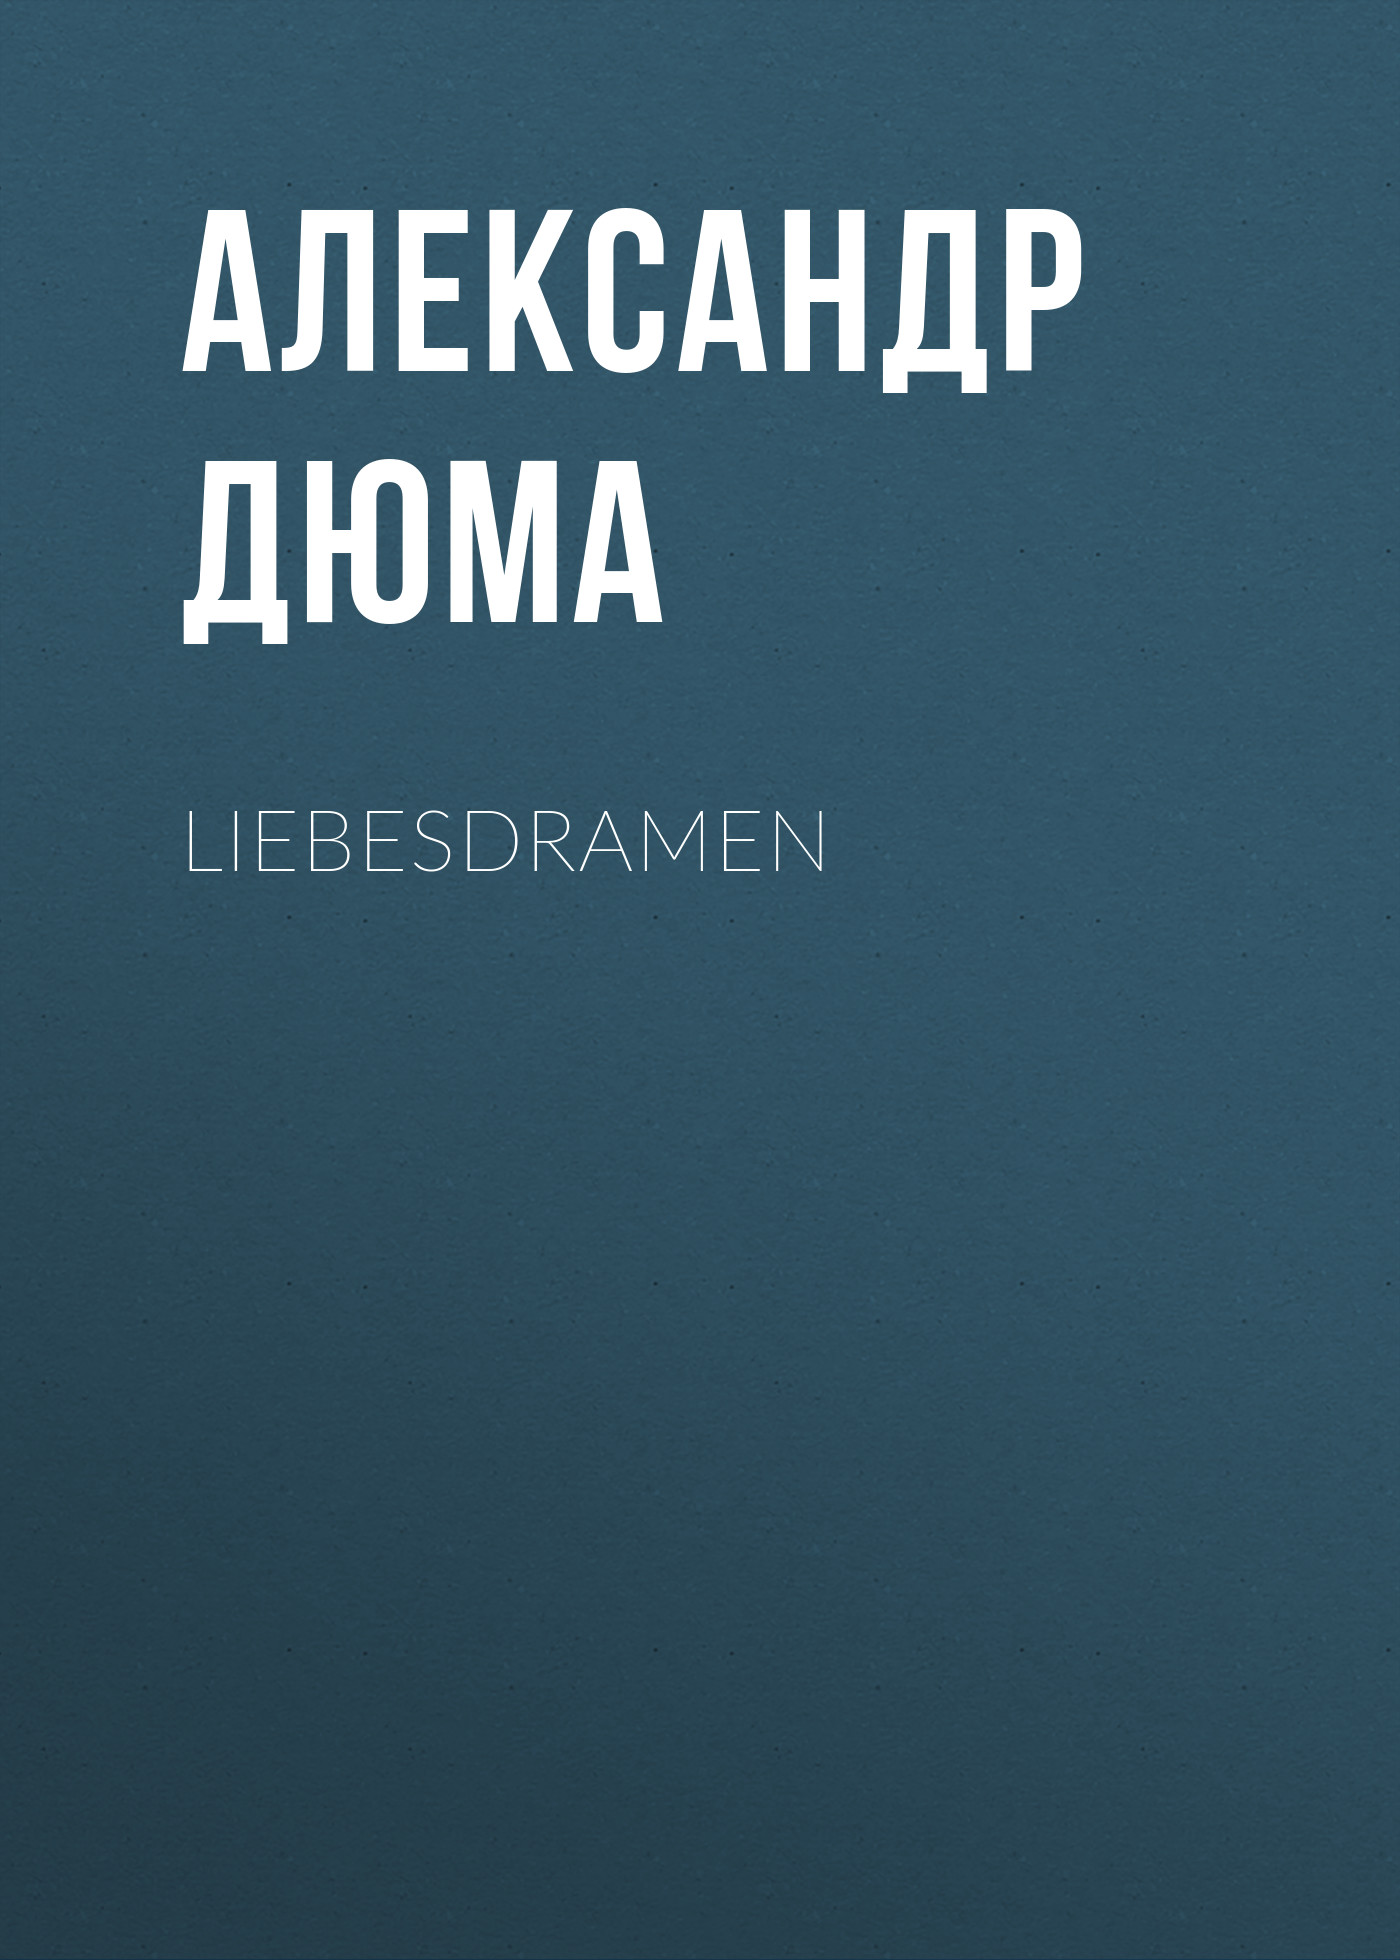 Книга Liebesdramen из серии , созданная Alexandre Dumas der Ältere, может относится к жанру Зарубежная классика. Стоимость электронной книги Liebesdramen с идентификатором 48632836 составляет 0 руб.